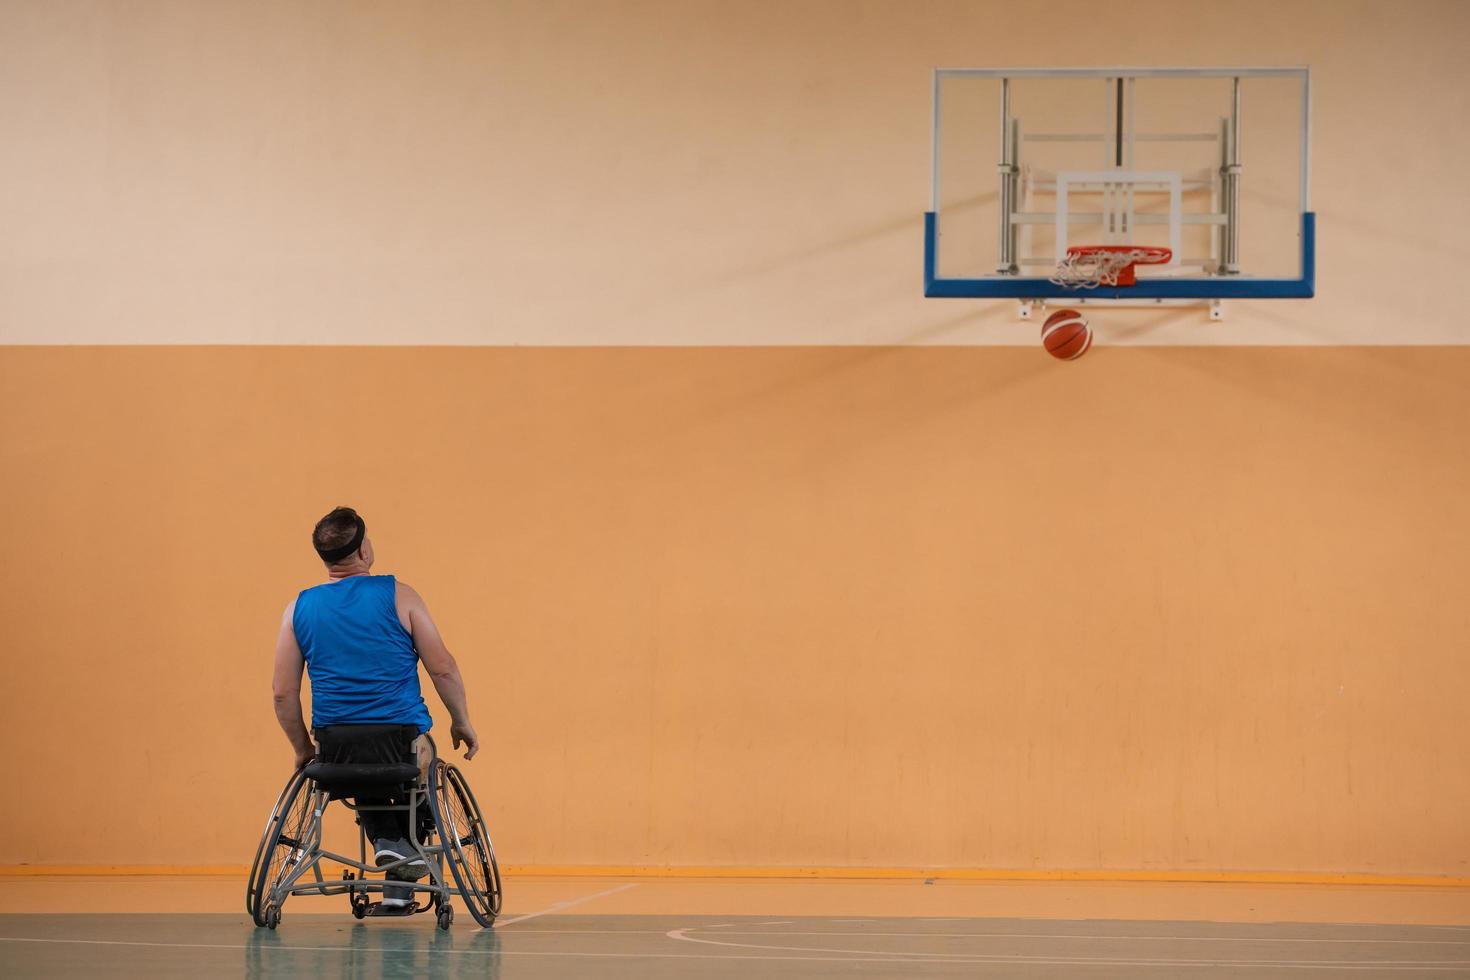 une photo d'un vétéran de la guerre jouant au basket avec une équipe dans une arène sportive moderne. le concept de sport pour les personnes handicapées